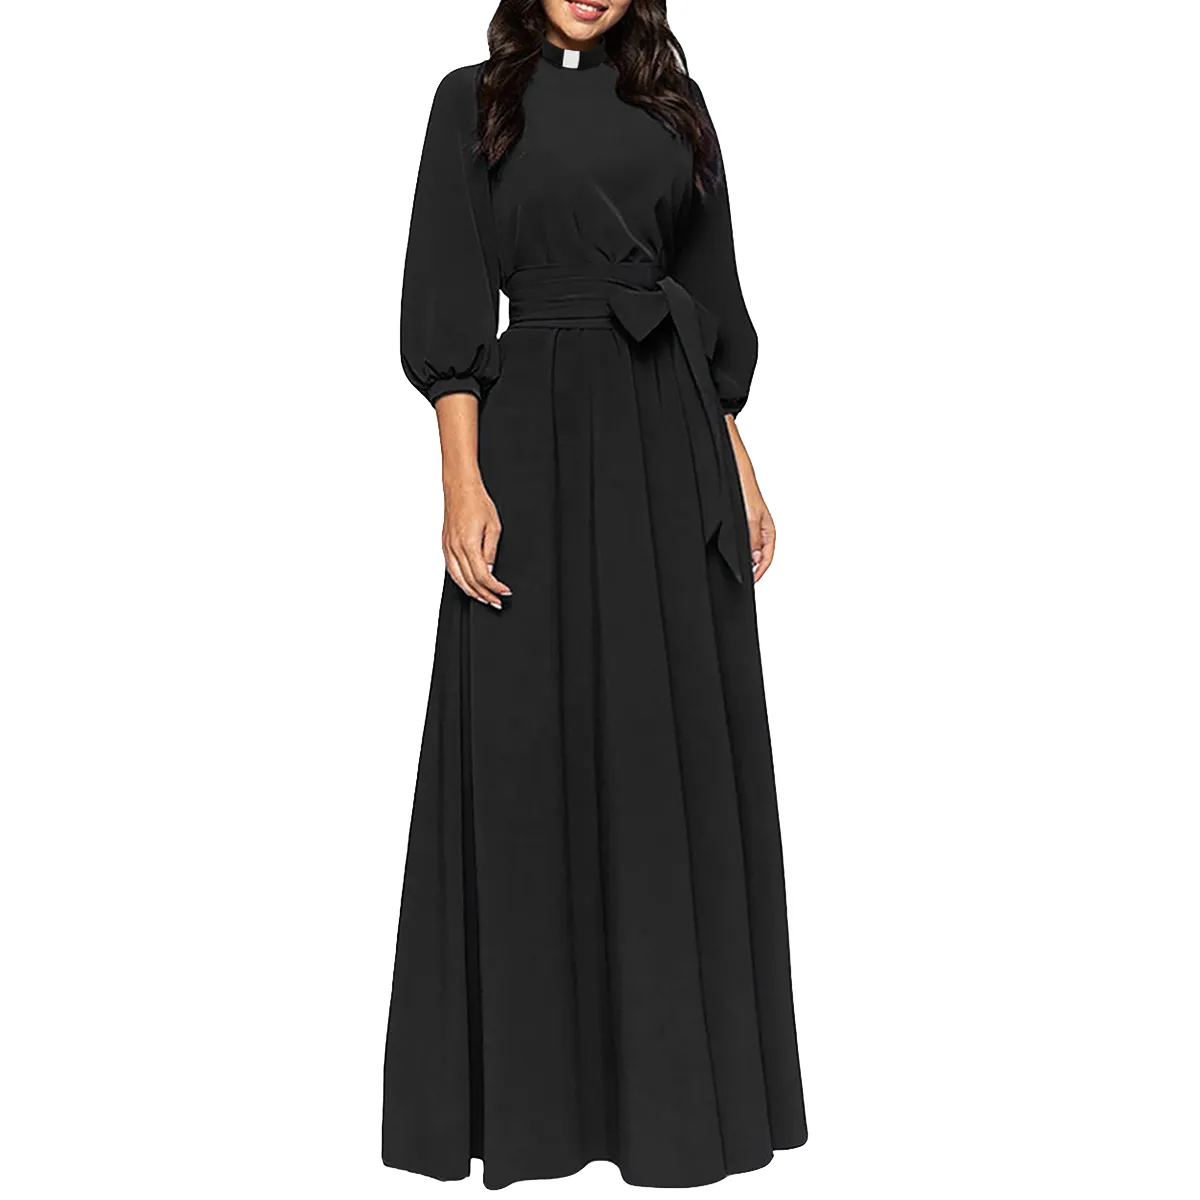 Церковное платье для женщин карандаш Bodycon Maxi платье элегантные священные духовенство с воротником вставки вкладок